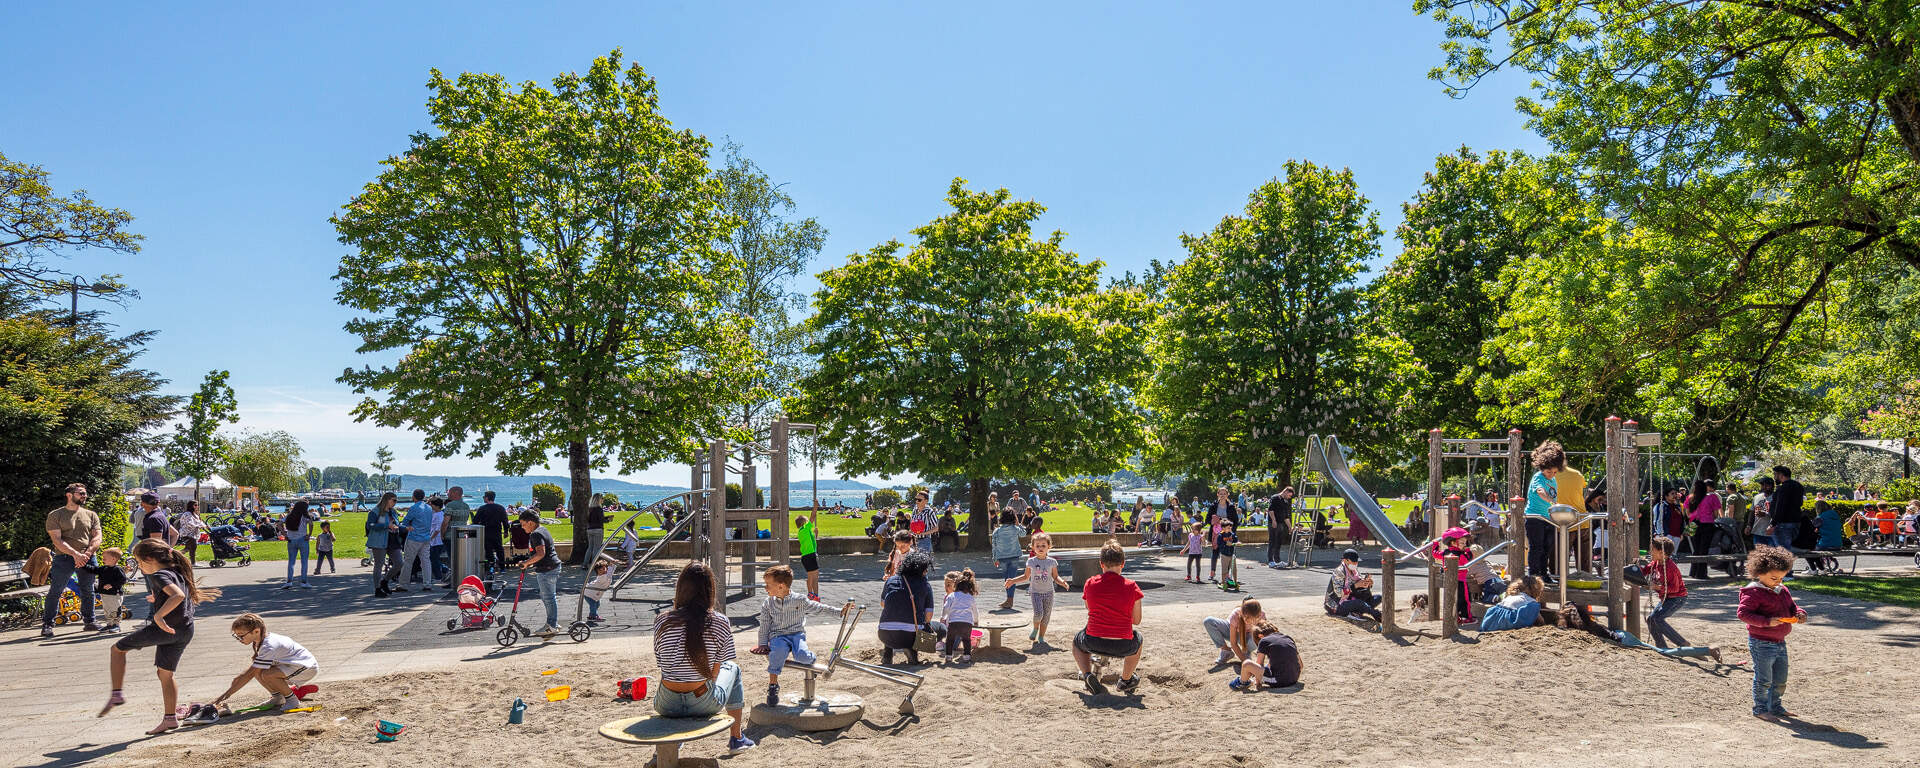 Stadt Biel/Bienne - Spielplatz am Strandboden